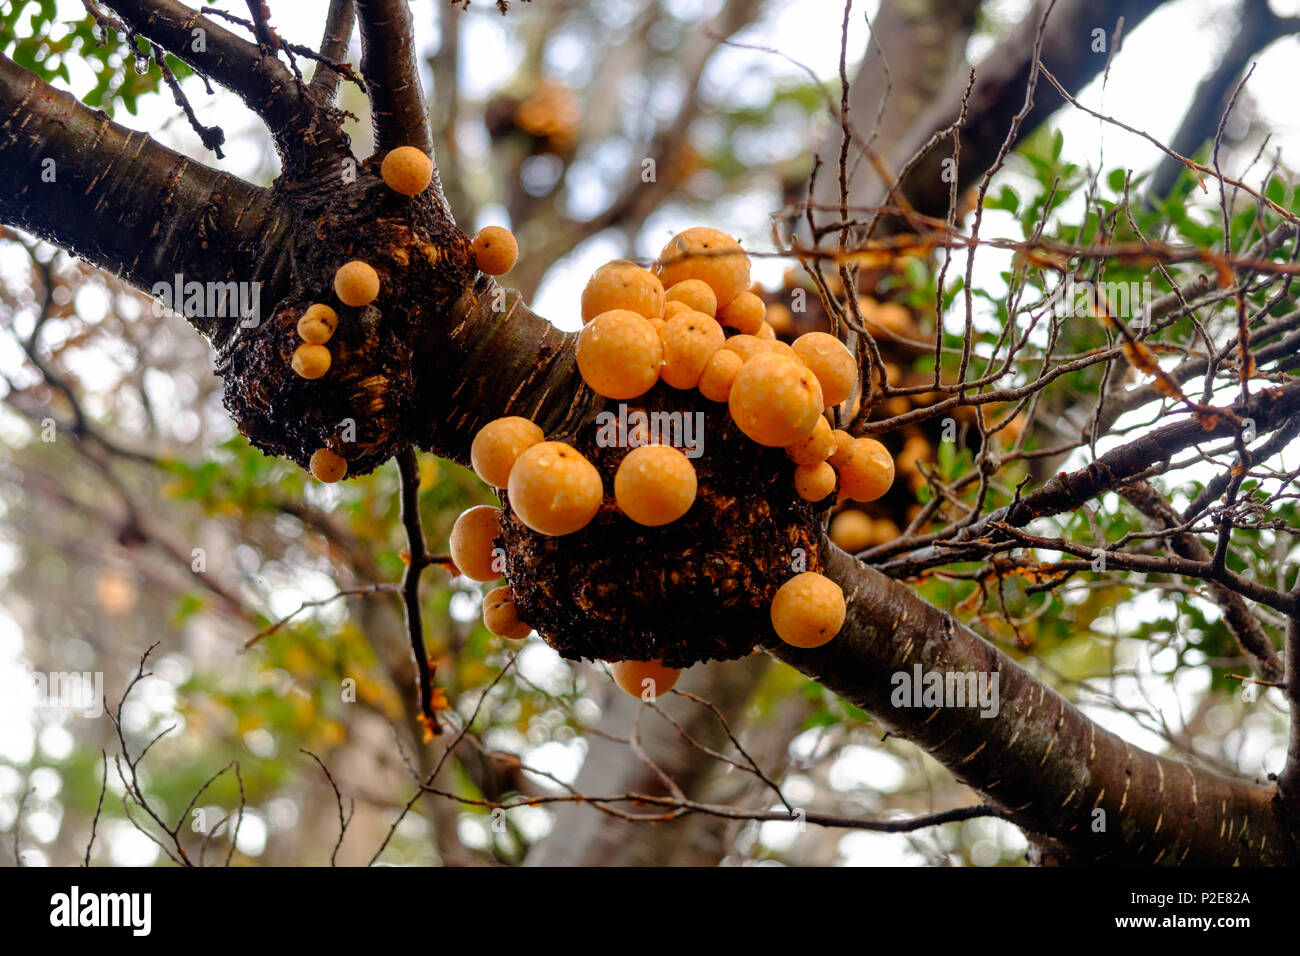 'Pan de indio' è un fungo commestibile. Questo fungo arancione cresce spesso su alberi di lenga, come qui nel parco nazionale Tierra del Fuego in Argentina. Foto Stock